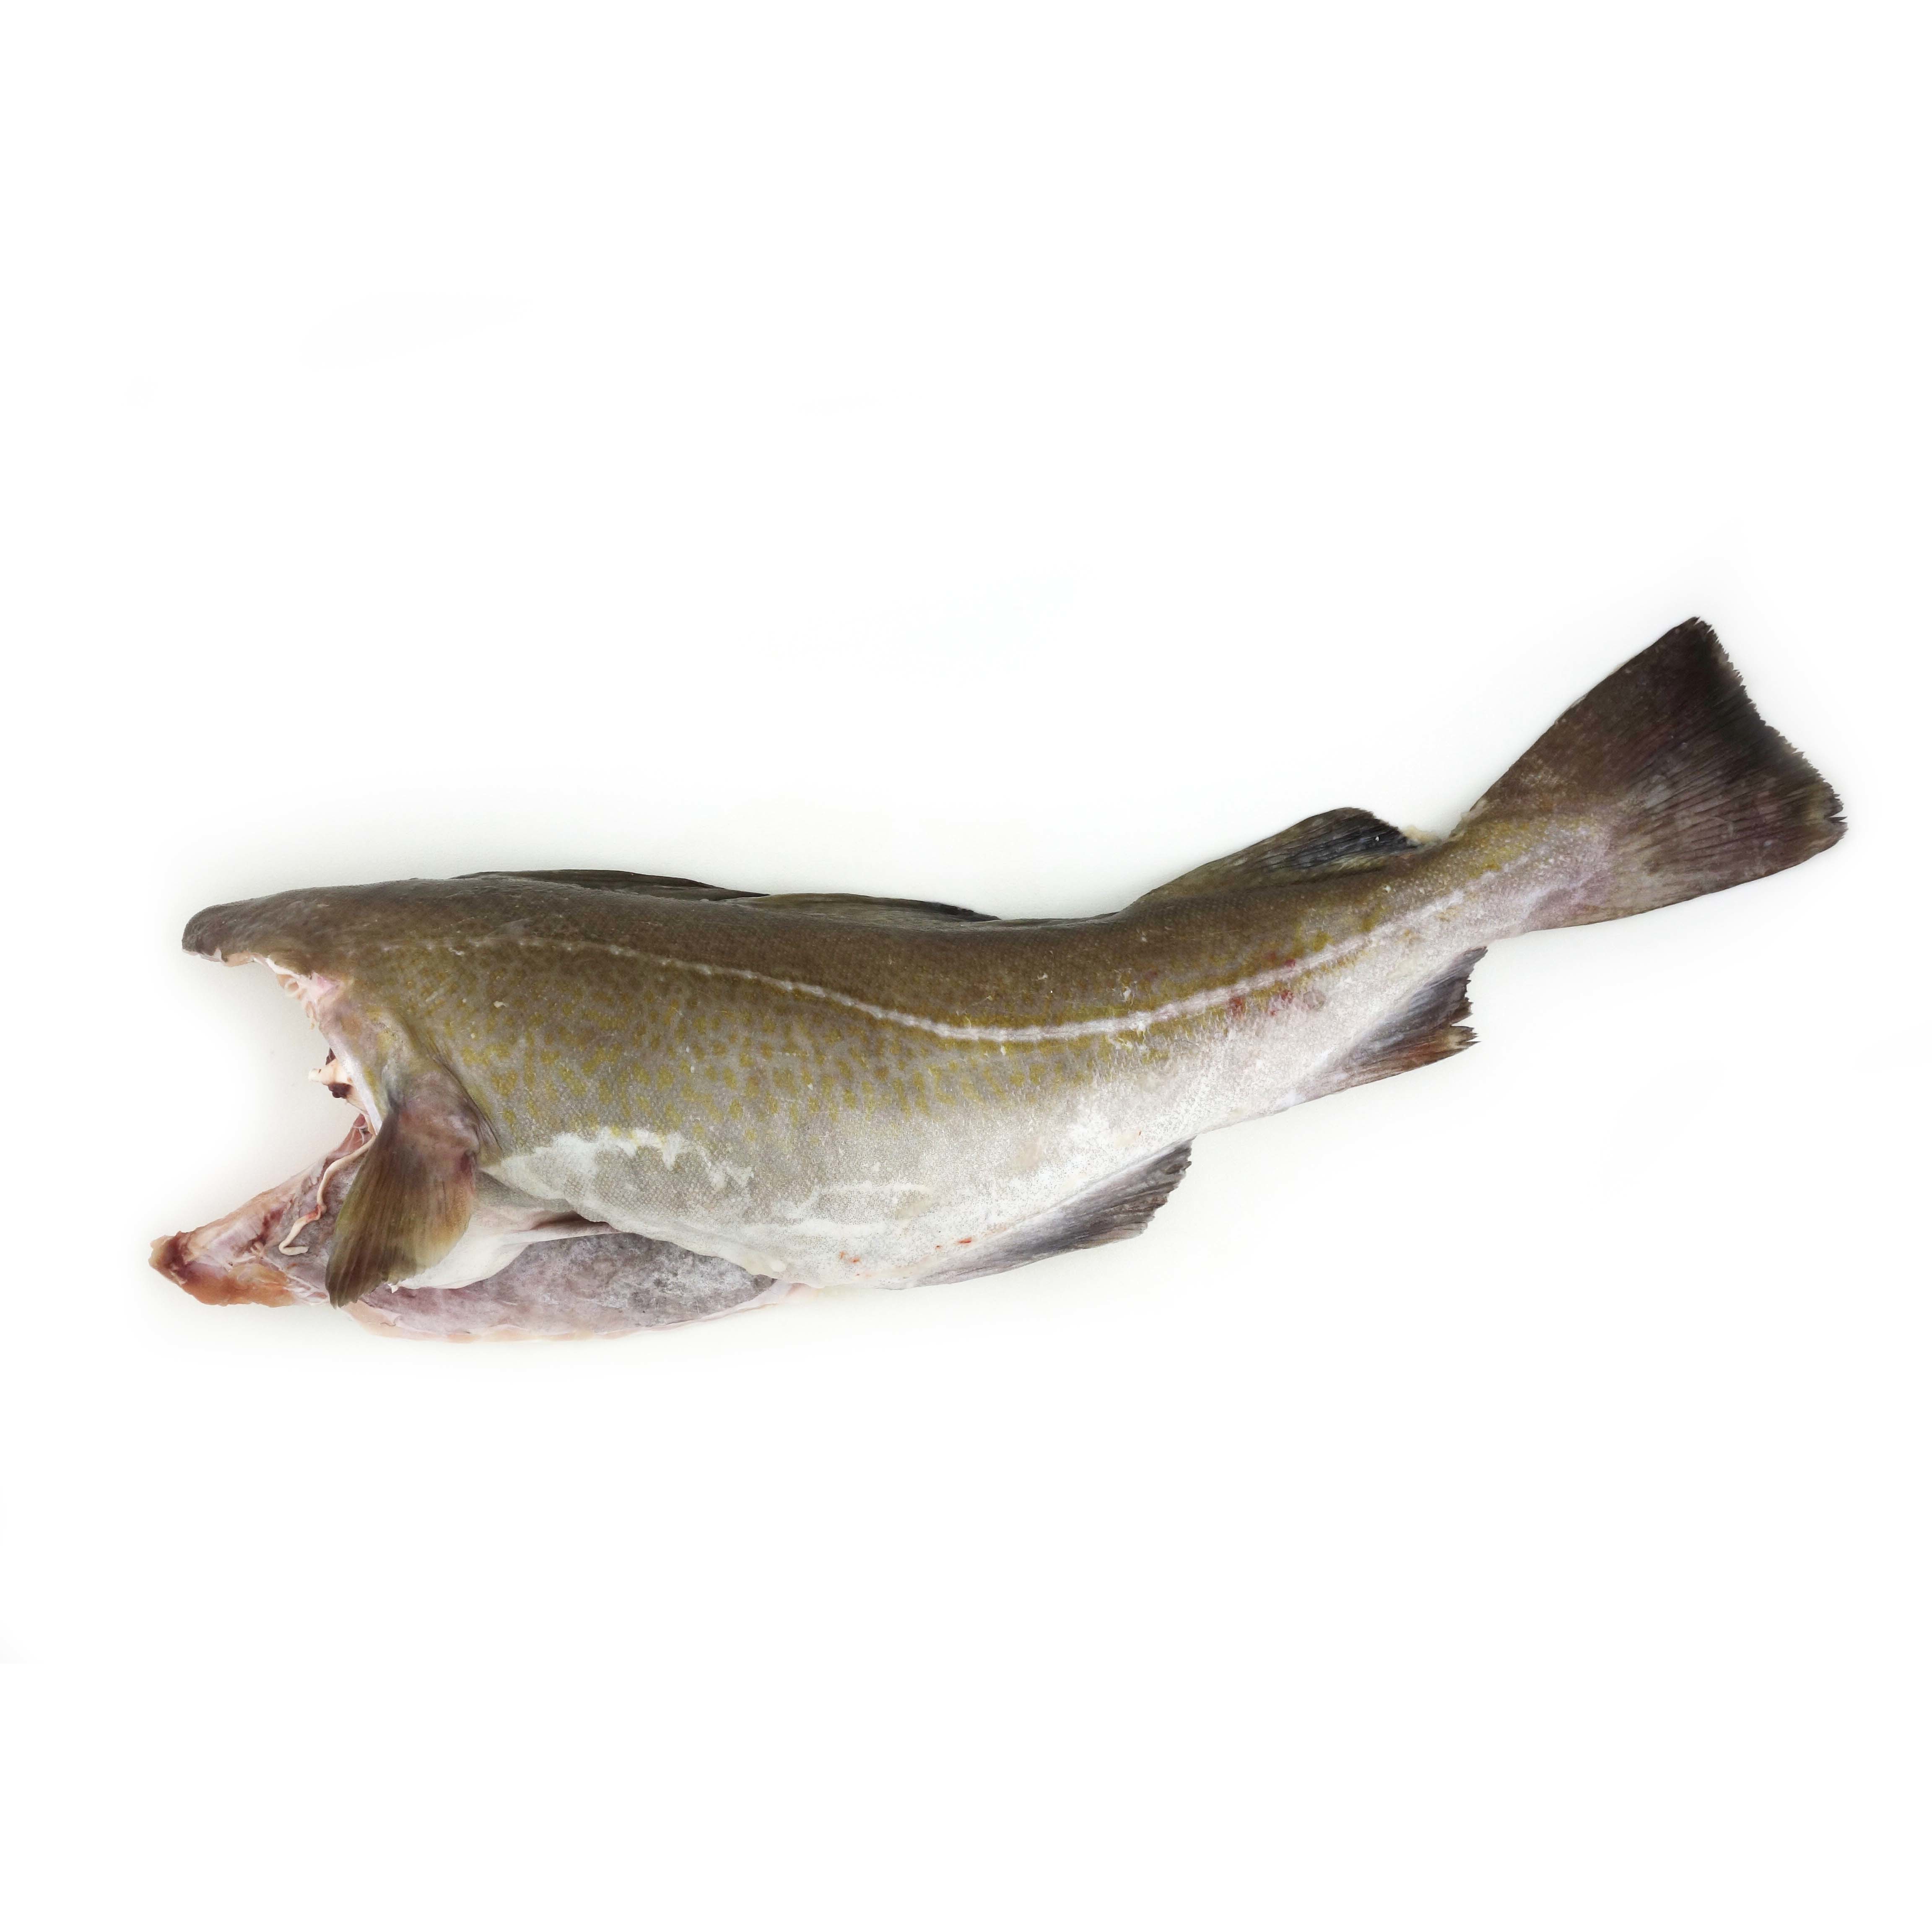 急凍法國野生原條鱈魚(Cod)- 已去鰓及內臟